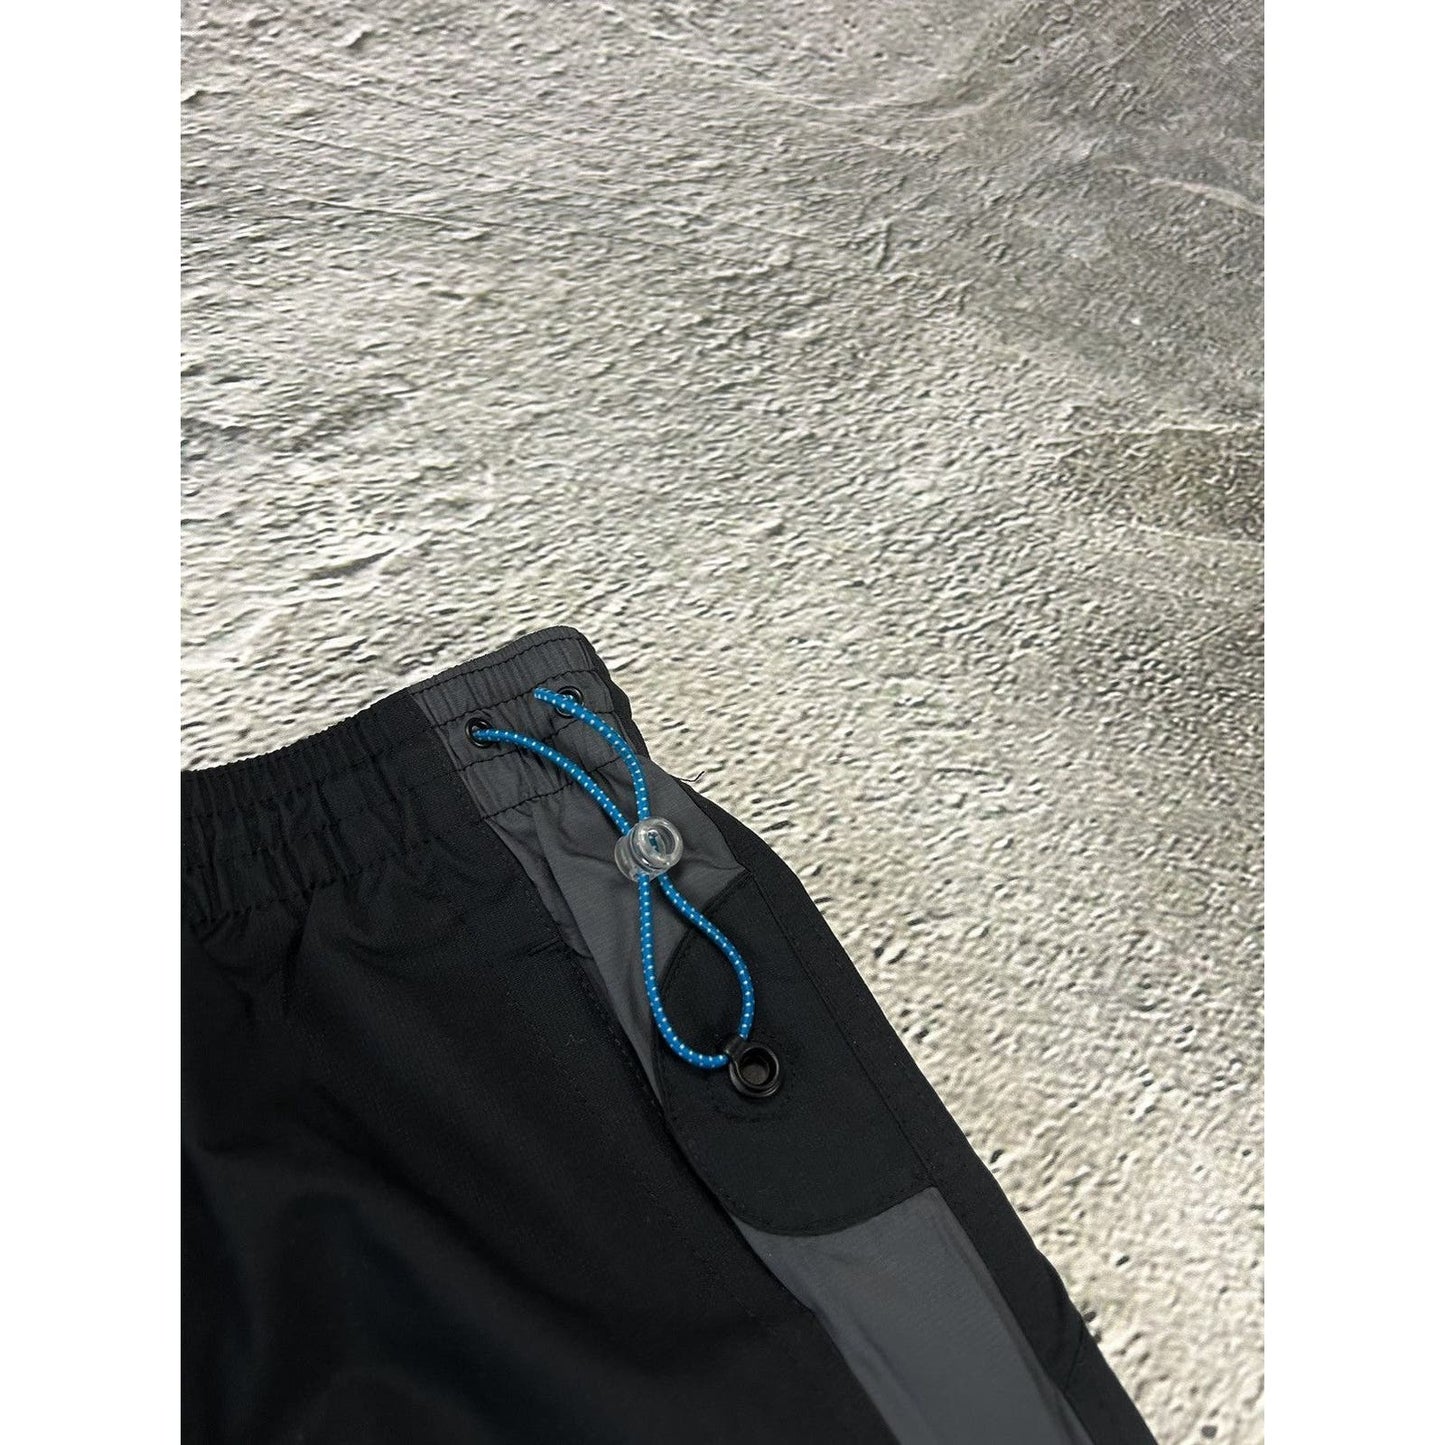 Nike Air vintage track suit black grey blue 2000s